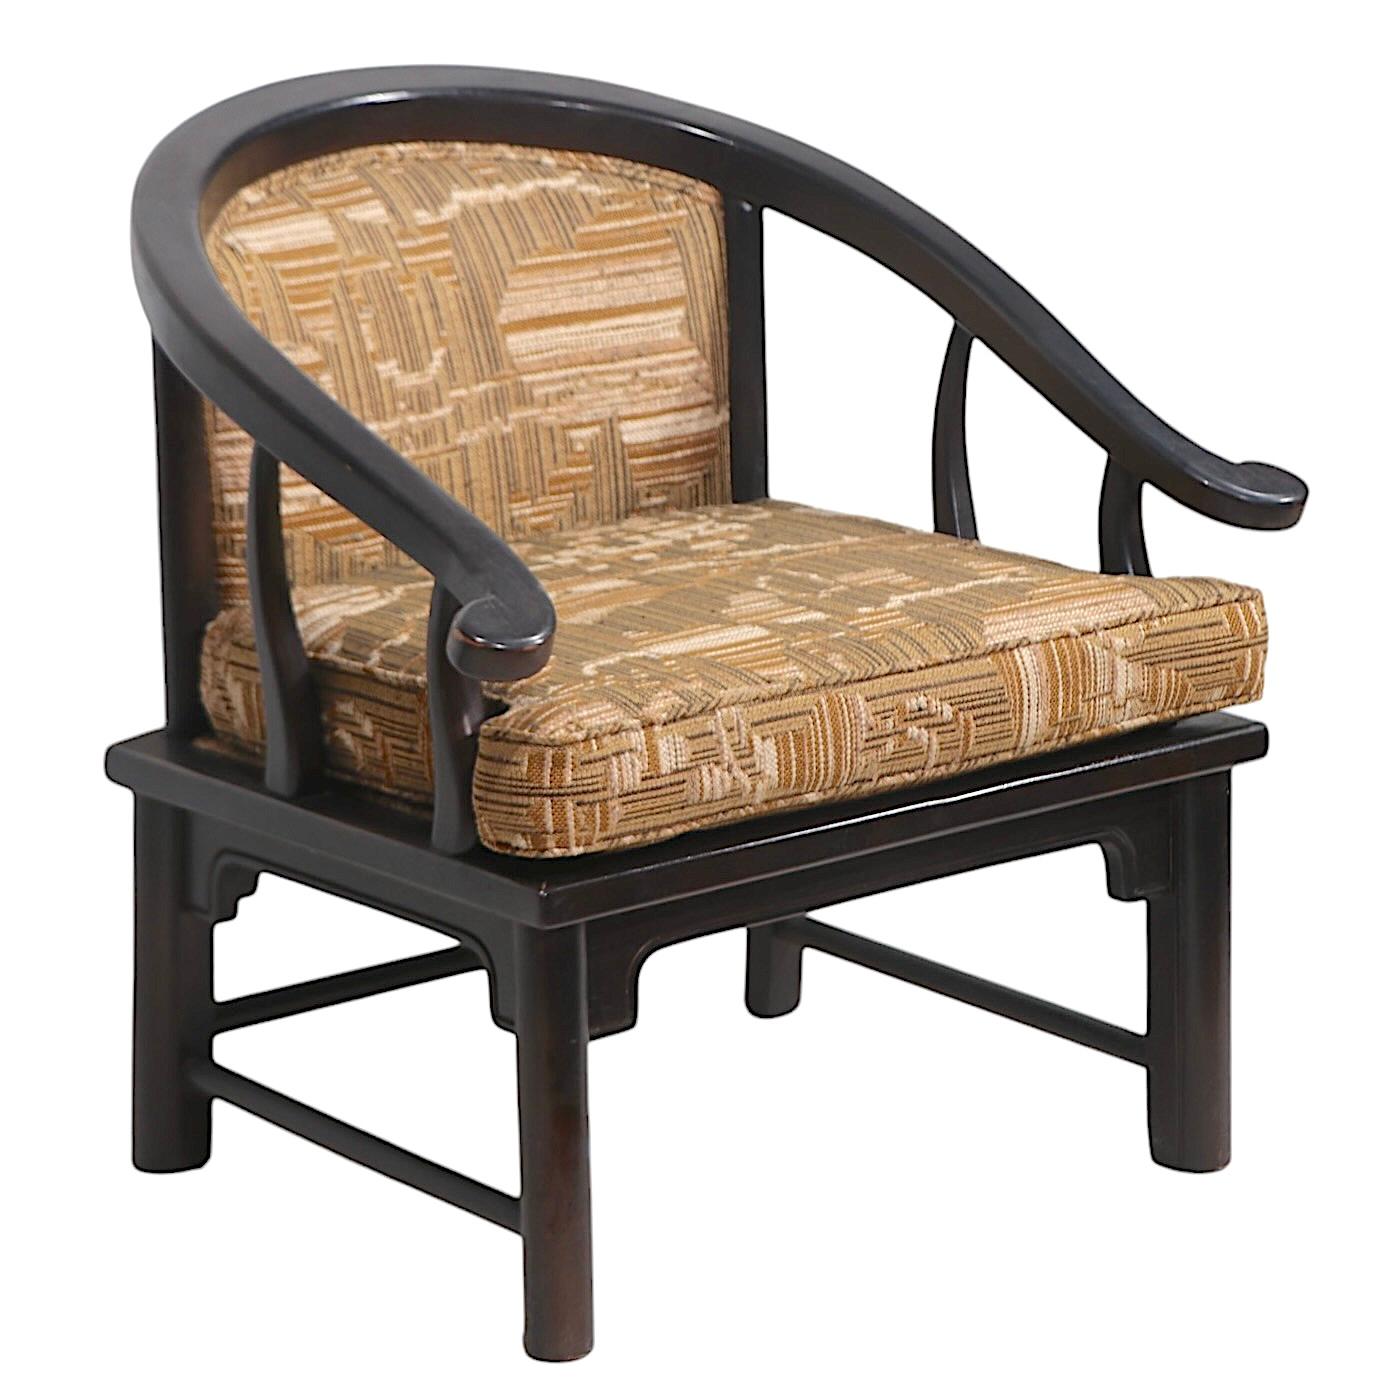 Voguish, chic und anspruchsvoll Hufeisen-Stil, chinesischen Einfluss Lounge-Sessel, zurückzuführen auf die  Century Furniture Co. im Stil von  James Mont. Der Stuhl besteht aus einem massiven Eichengestell in dunkelbrauner Originallackierung mit